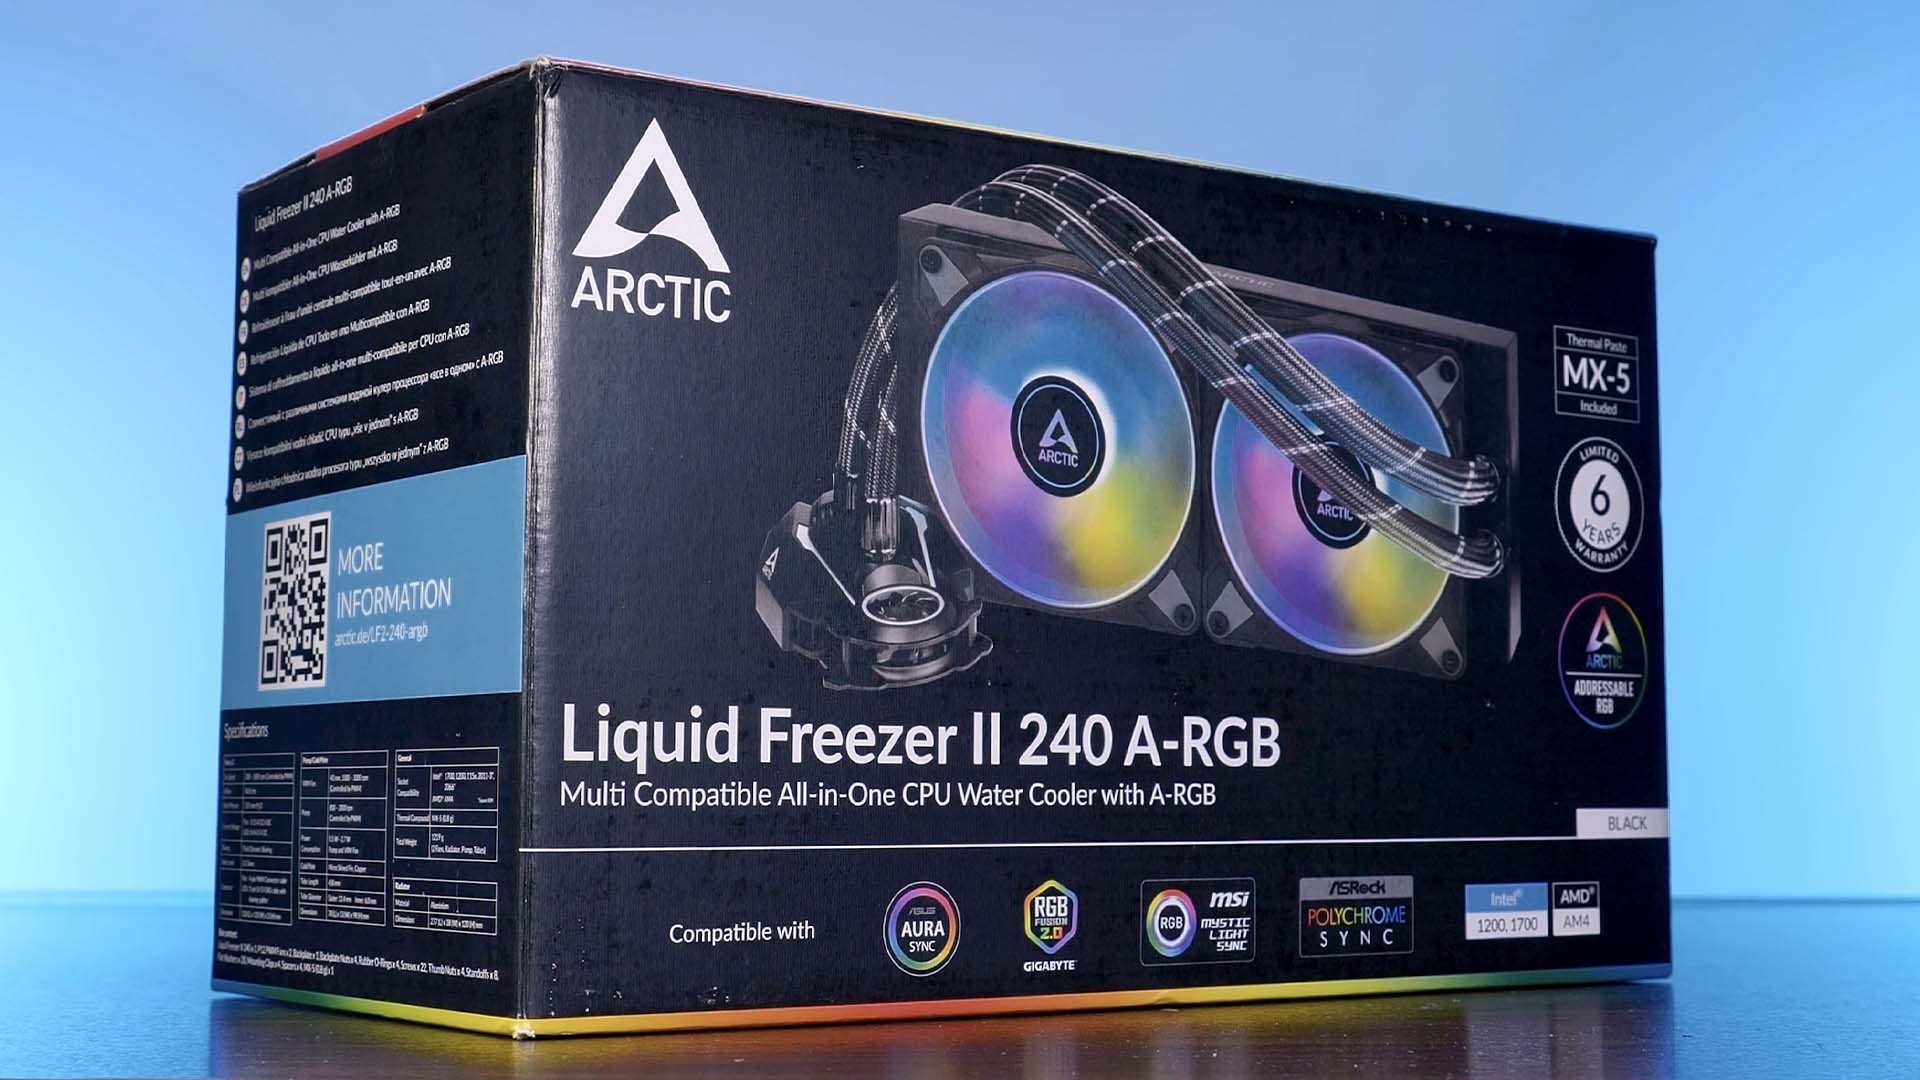 ARCTIC Liquid Freezer II AIO - Removing it for AM4